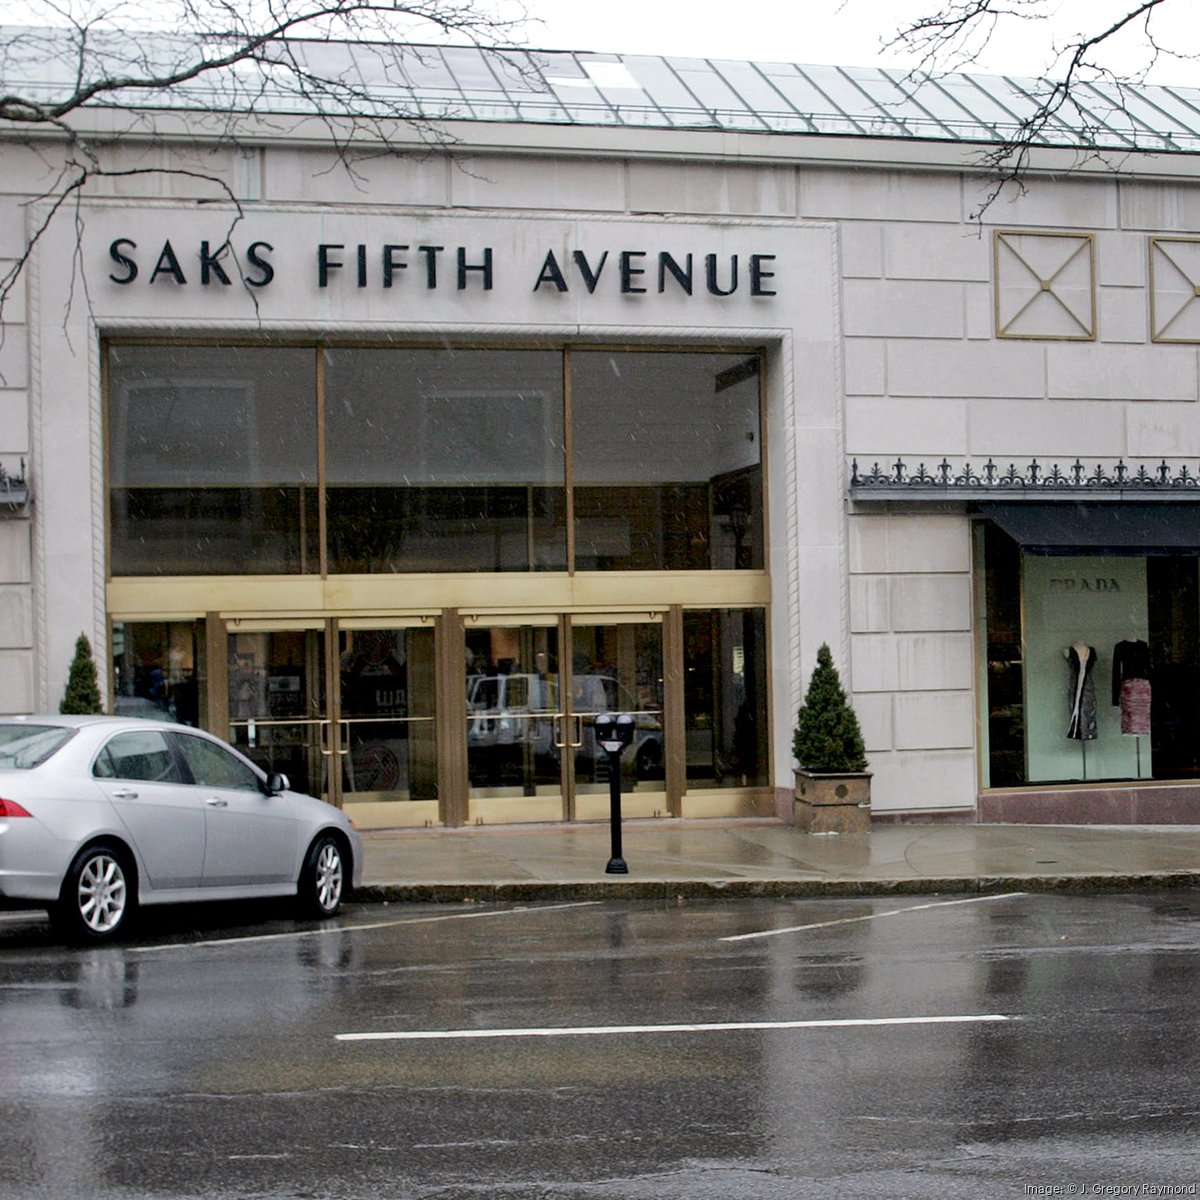 Saks Fifth Avenue, Best Shoes, in Boston